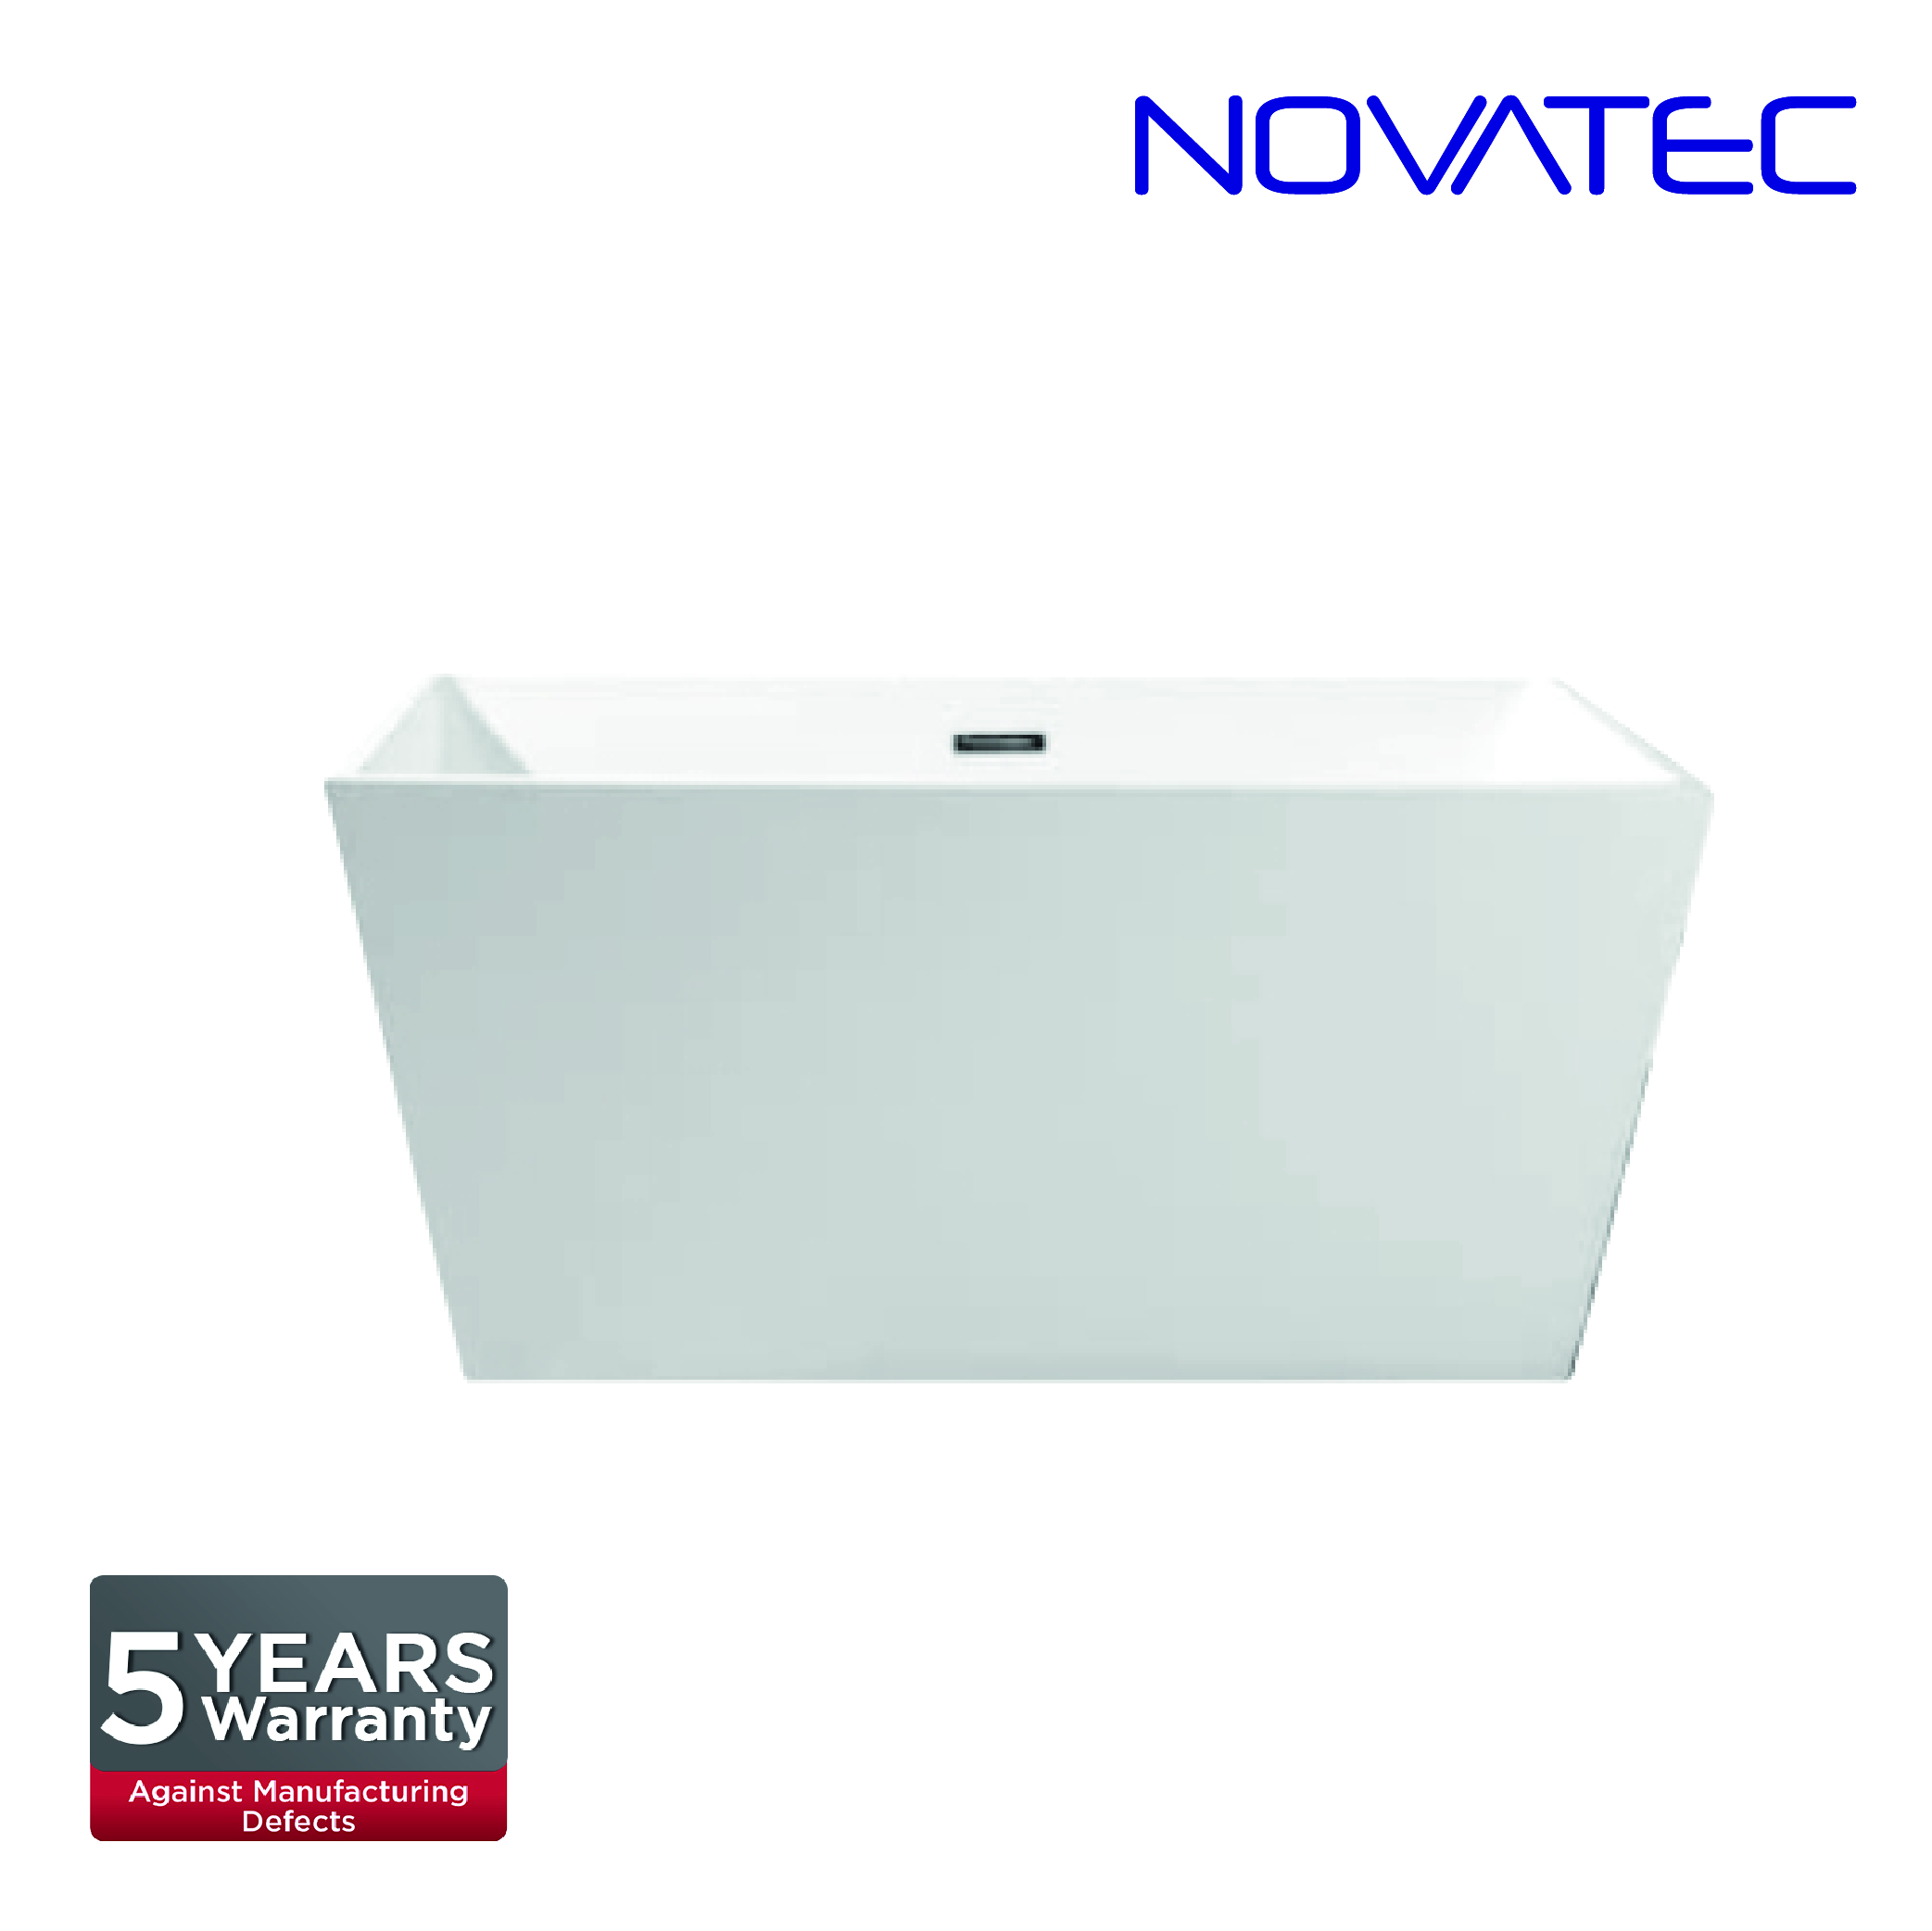 Novatec SW Catania Bath Tub BT 160016A